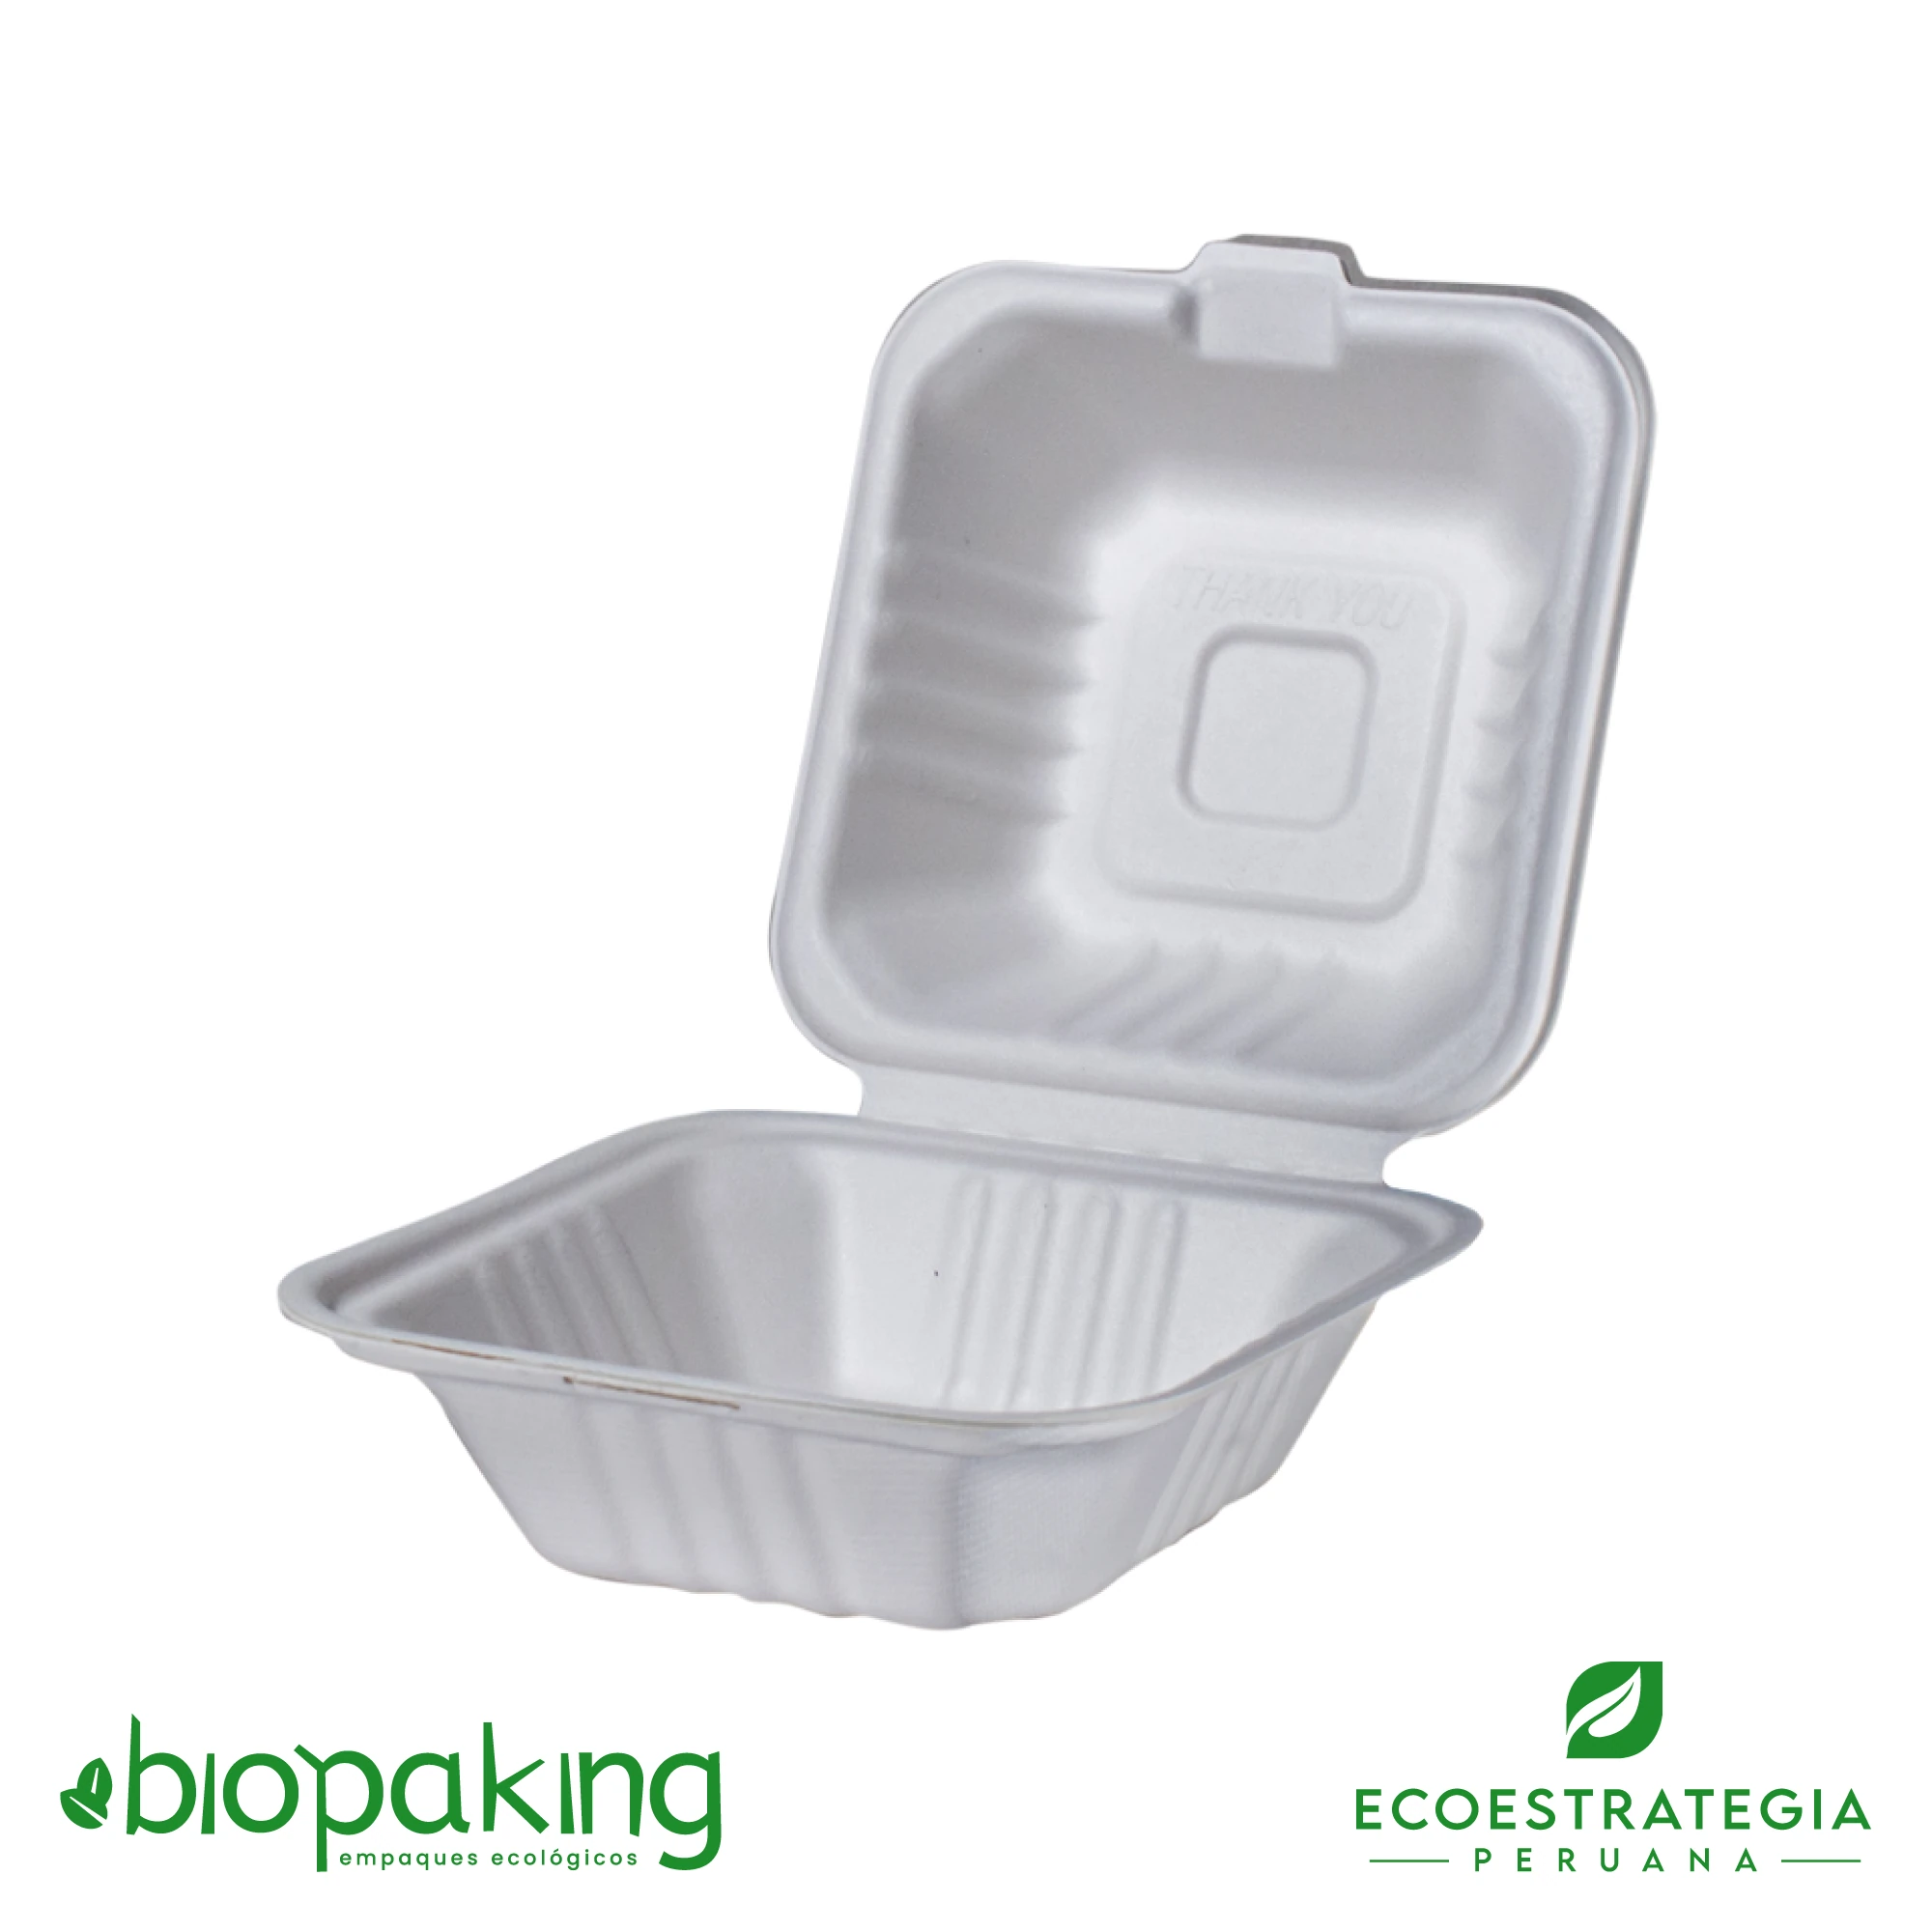 Este envase biodegradable CT4 tiene una capacidad de 480ml. Taper biodegradable a base del bagazo de fibra de caña de azúcar, empaques de gramaje ideal para comidas frías y calientes